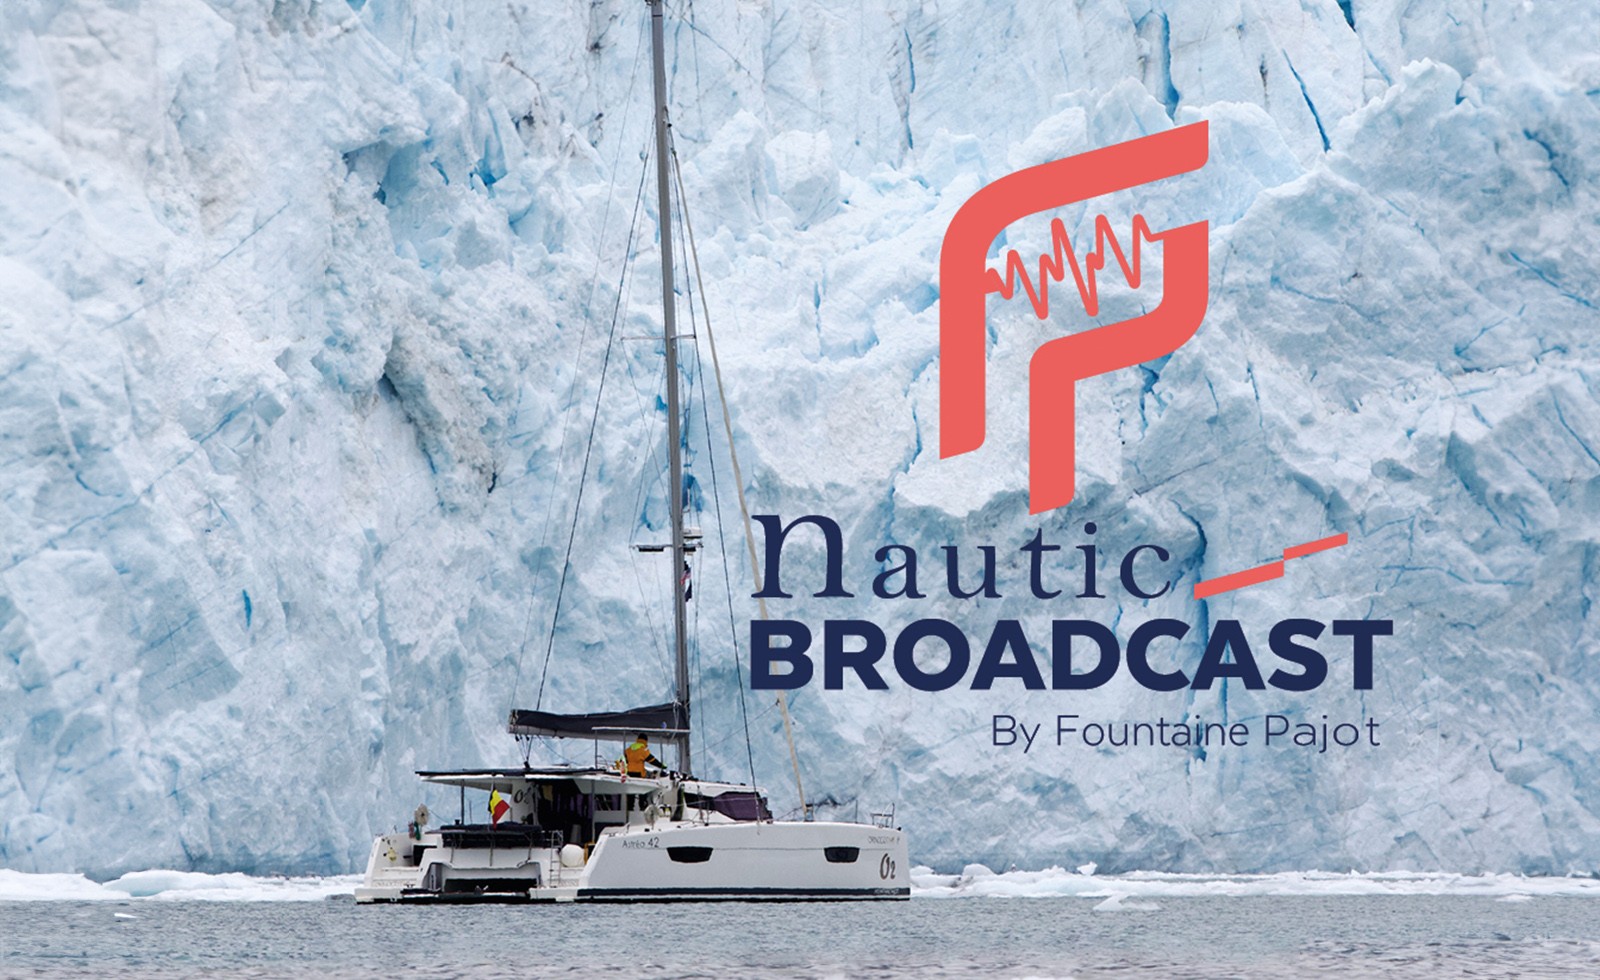 Fountaine Pajot's Exclusive Nautic Broadcast